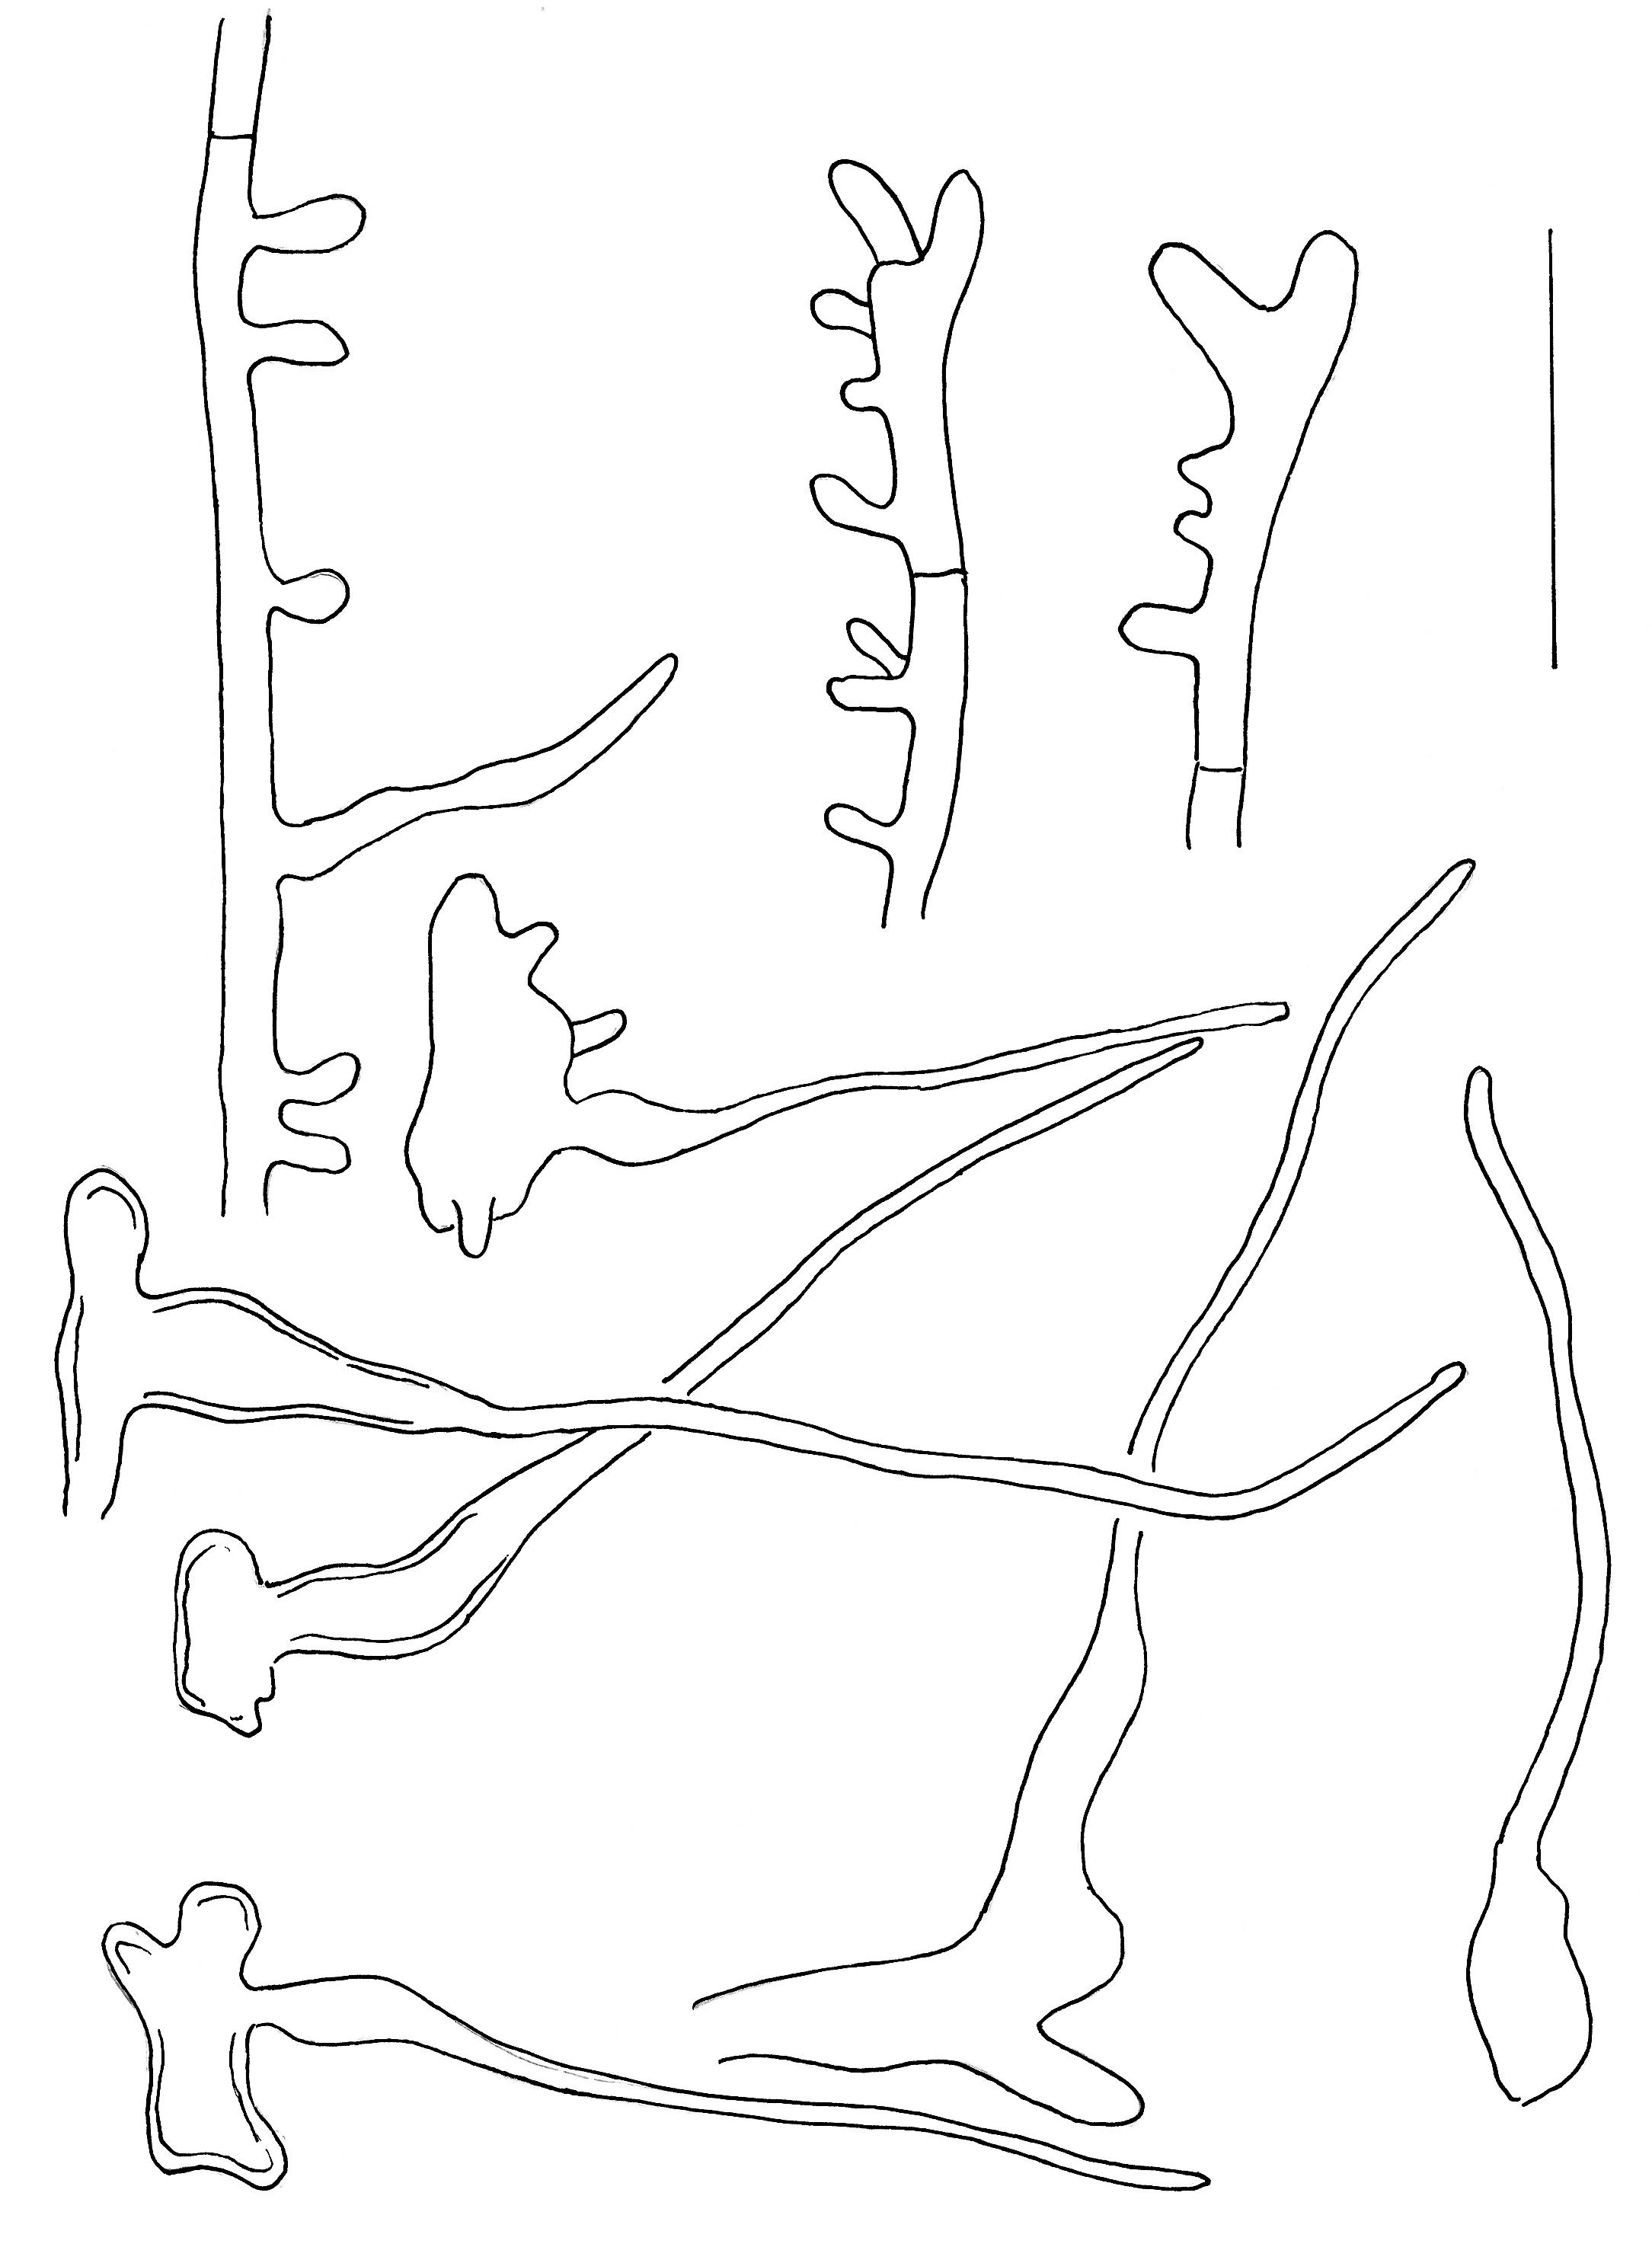 Stilksporesopper: Mycena scirpicola.